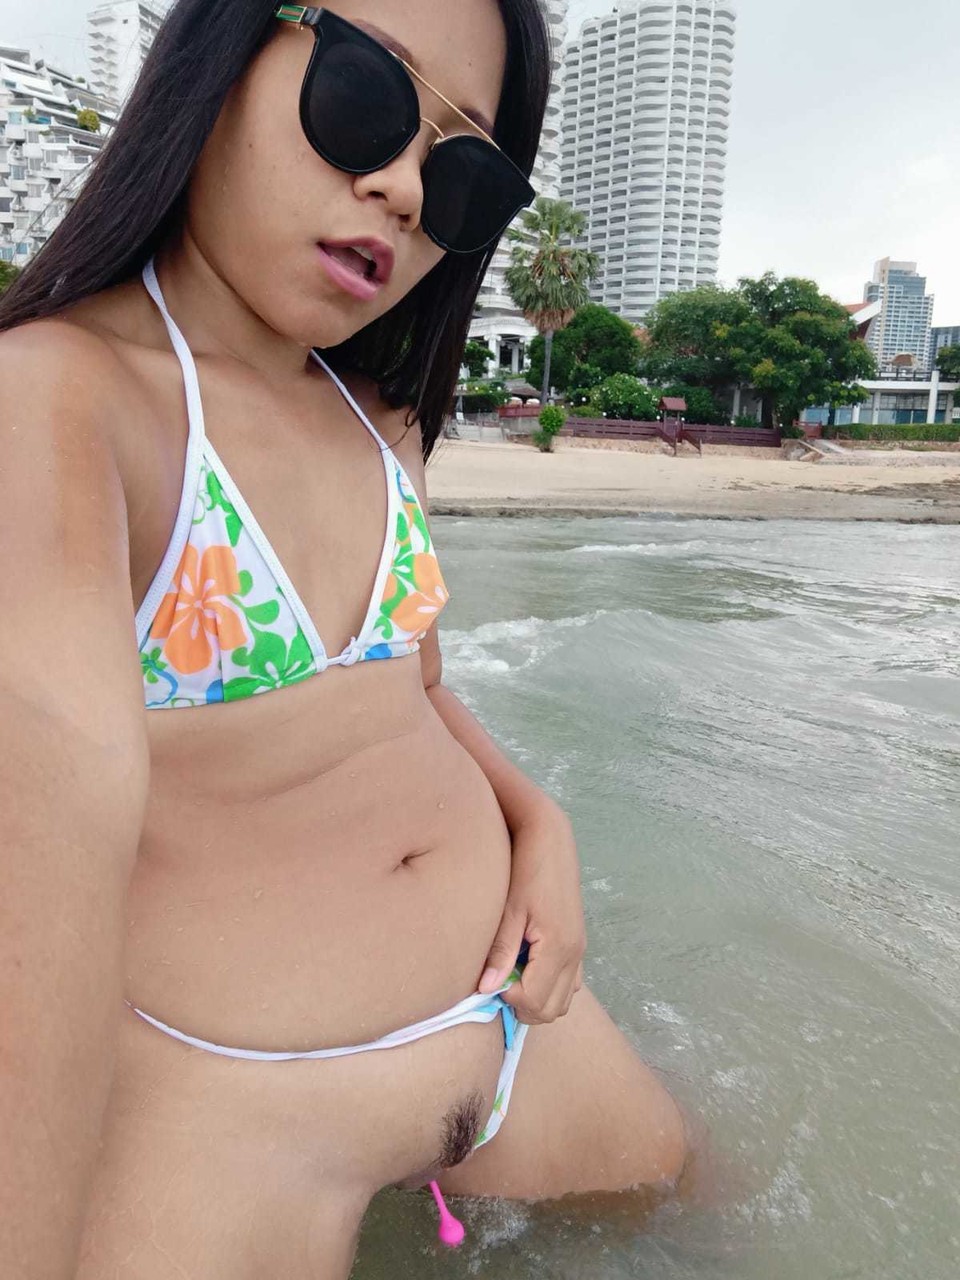 Gorgeous Asian amateur Kiki Asia shows her hot ass in a bikini at the beach photo porno #425545190 | TukTuk Thailand Pics, Kiki Asia, Thai, porno mobile